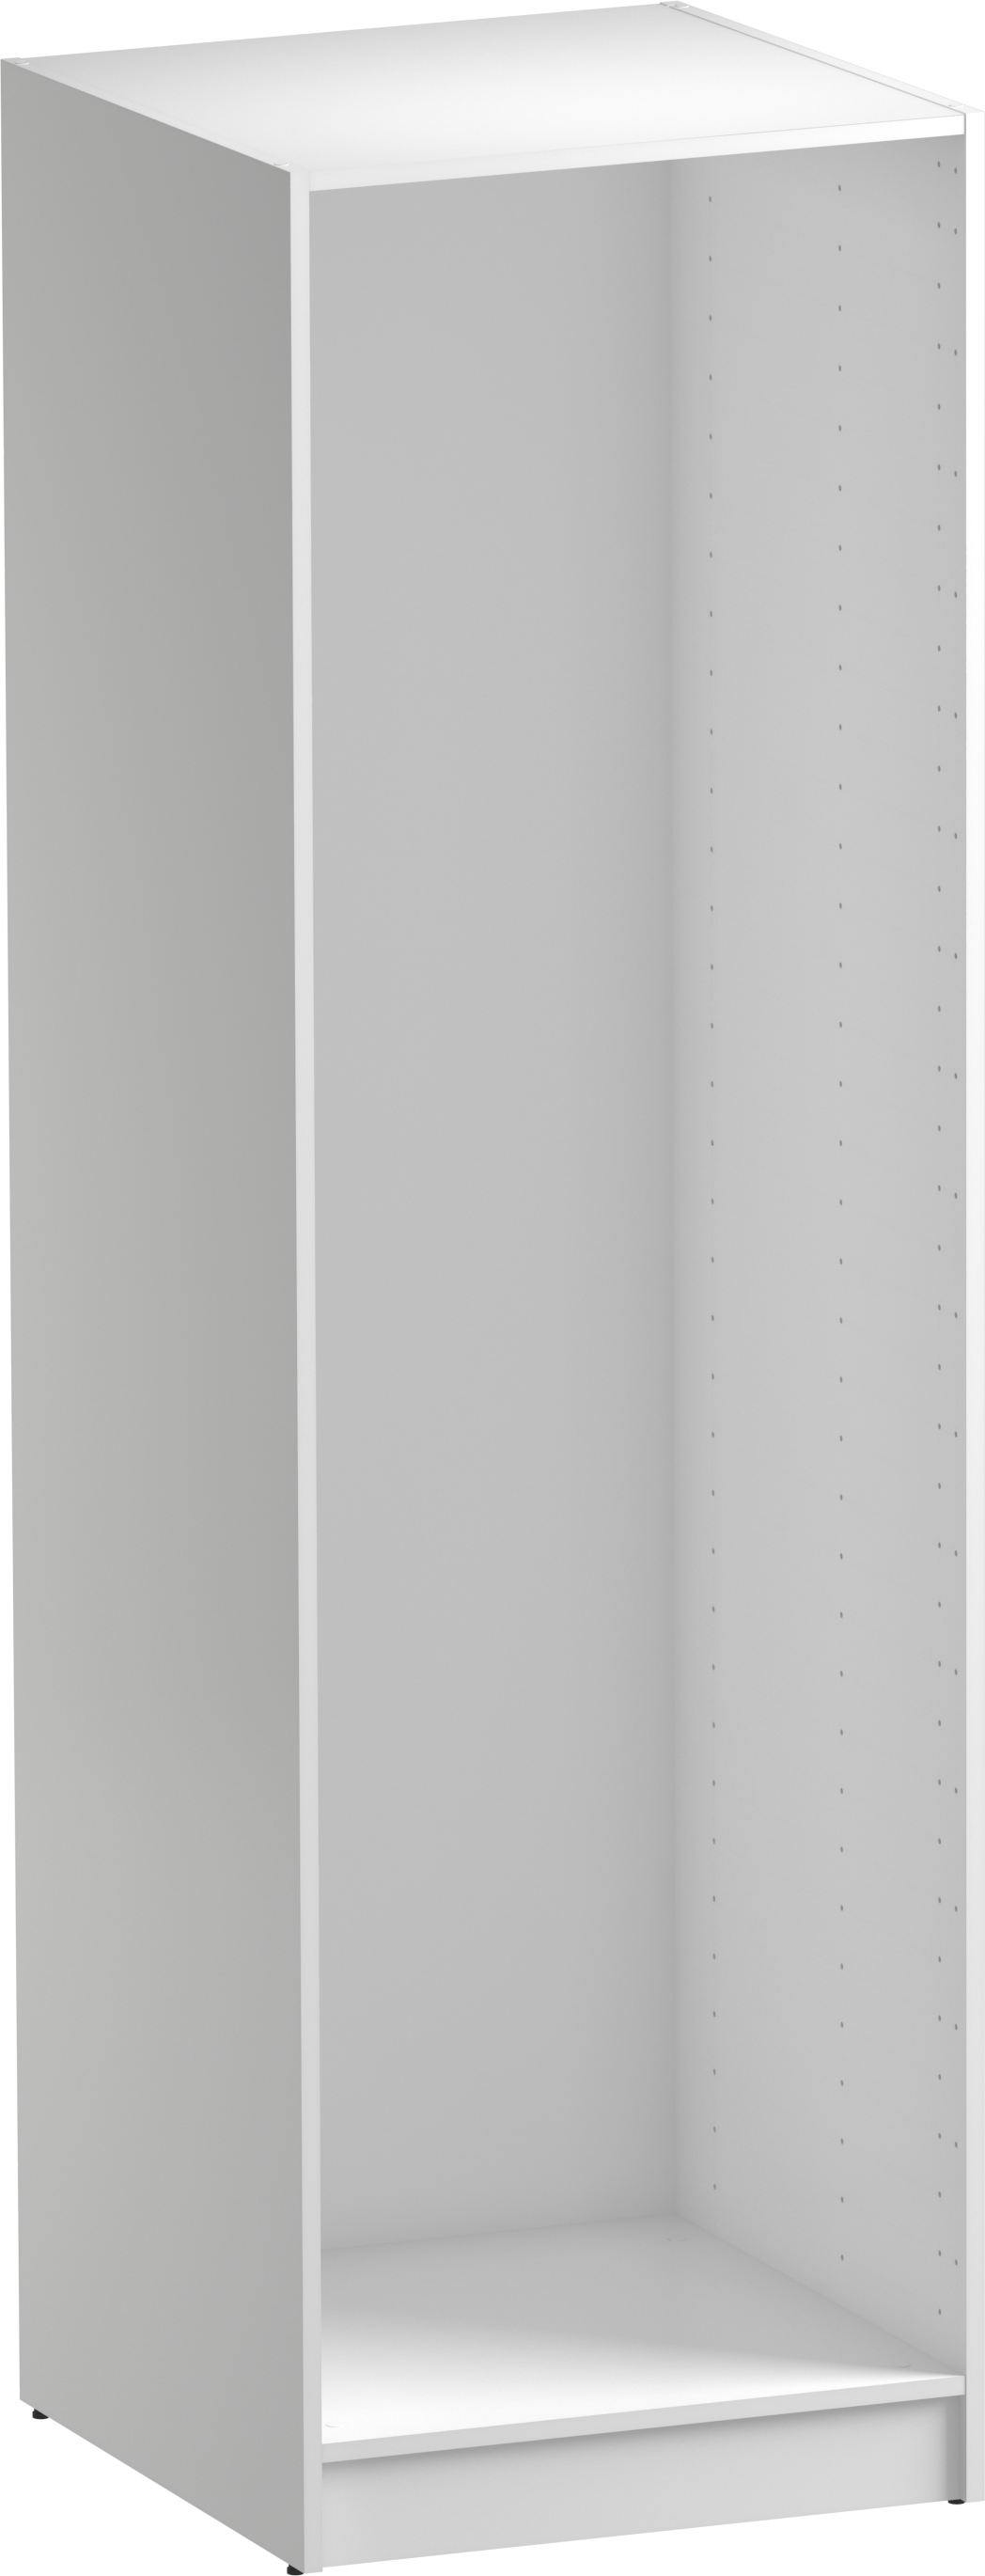 Módulo de armario spaceo home blanco 60x200x60 cm